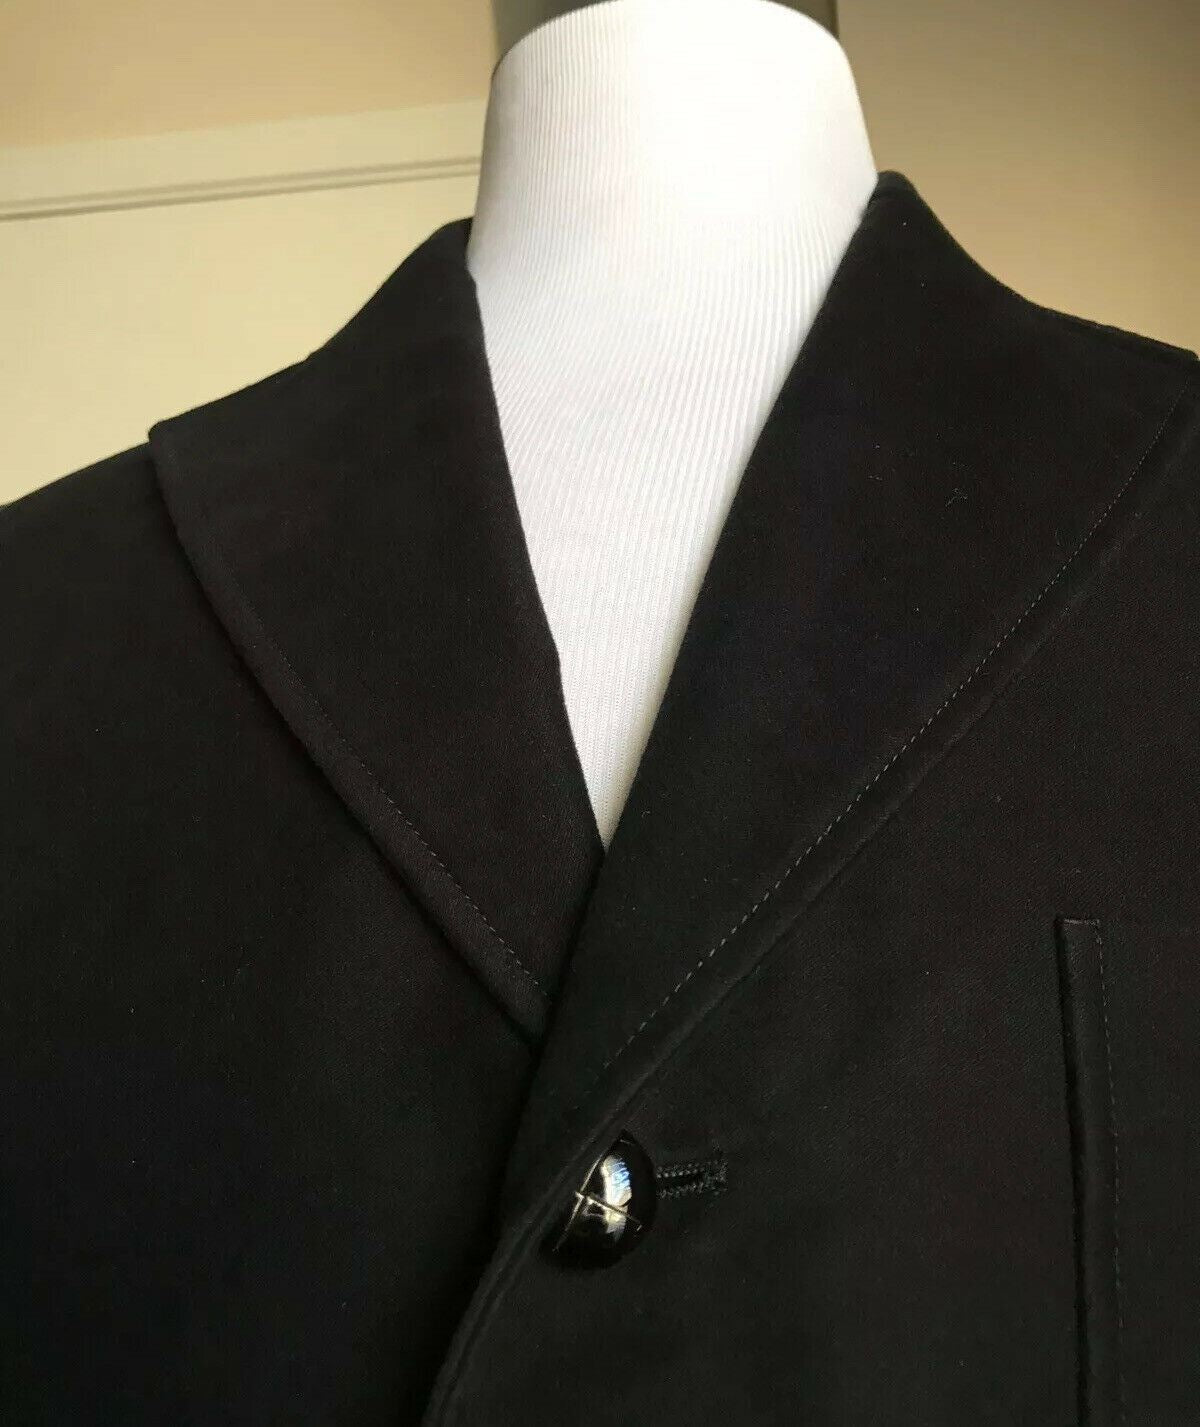 Новое мужское пальто Gucci из хлопка с молескином и кожей за 2400 долларов, черный 42 США (52 ЕС)